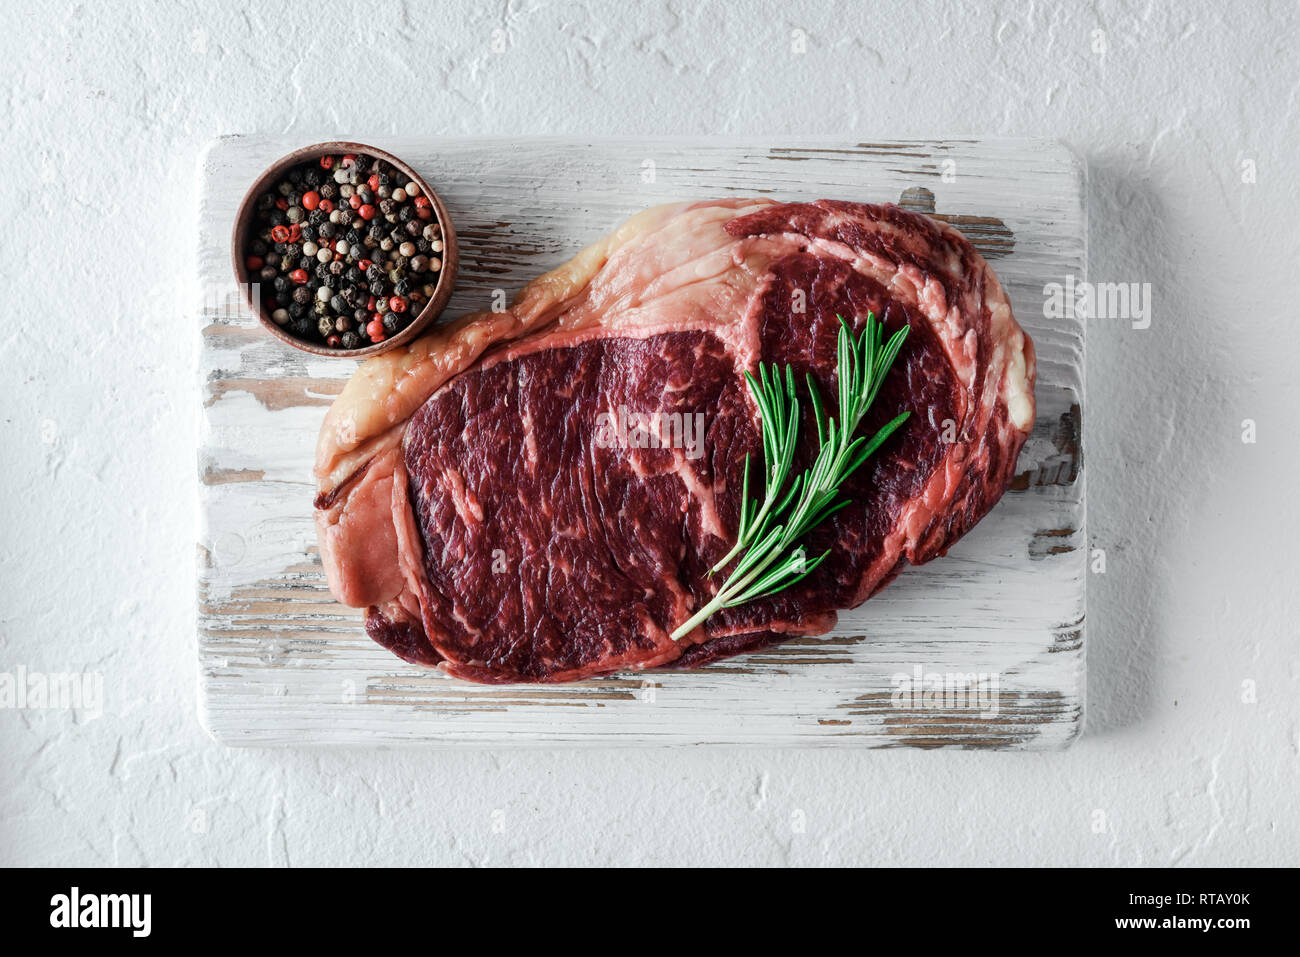 Le persillage ribeye steak au poivre et au romarin sur plaque de bois blanc. Hacher la viande de boeuf Banque D'Images